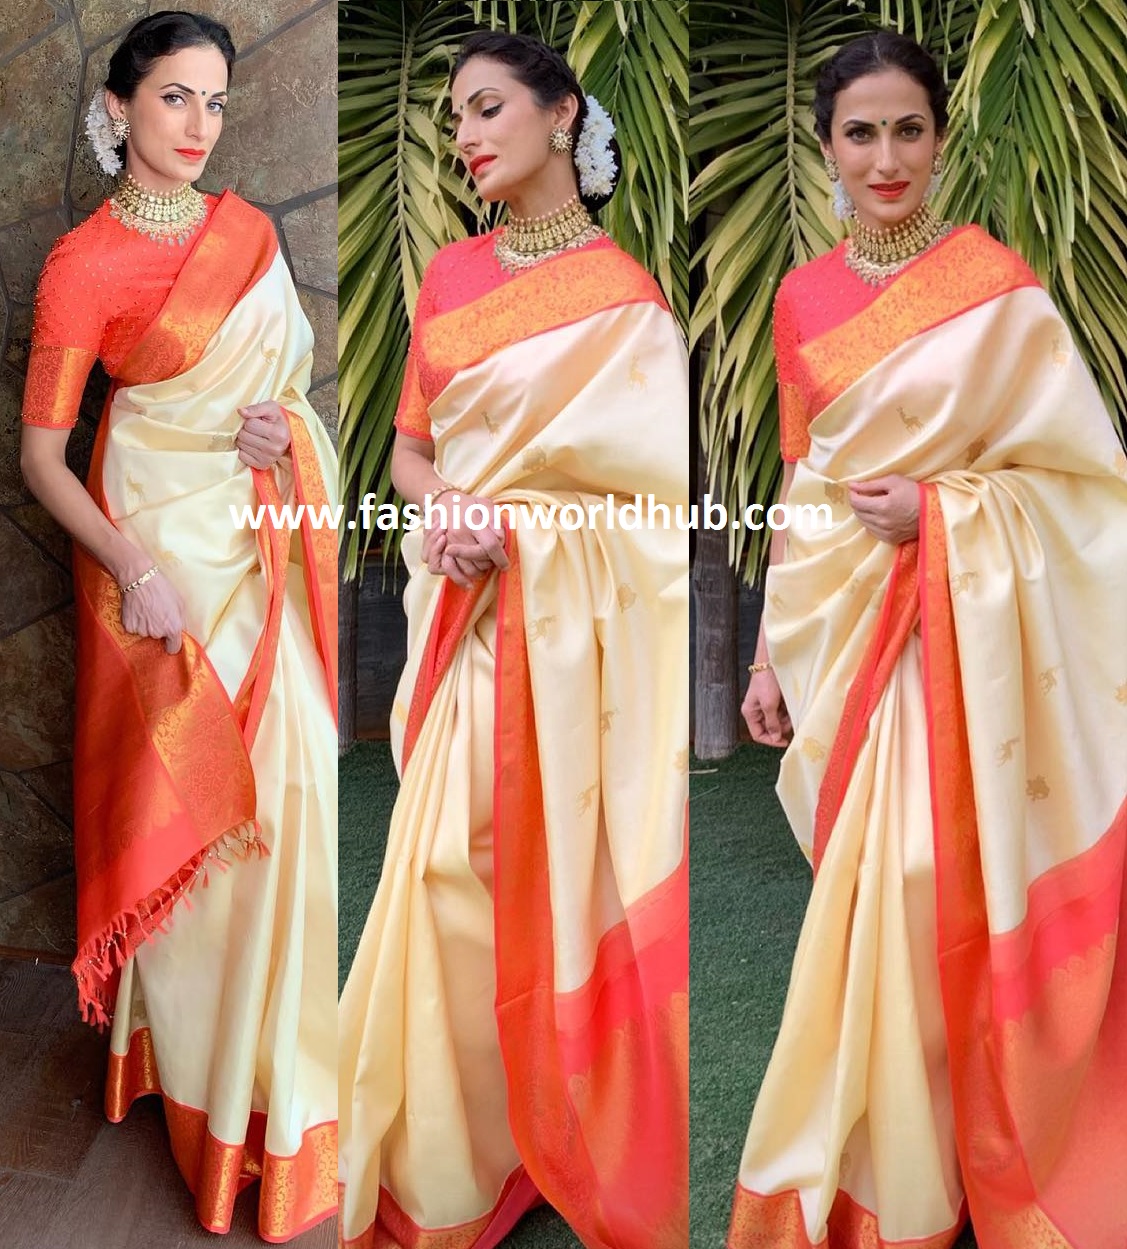 Shilpa reddy in Traditional look! | Fashionworldhub